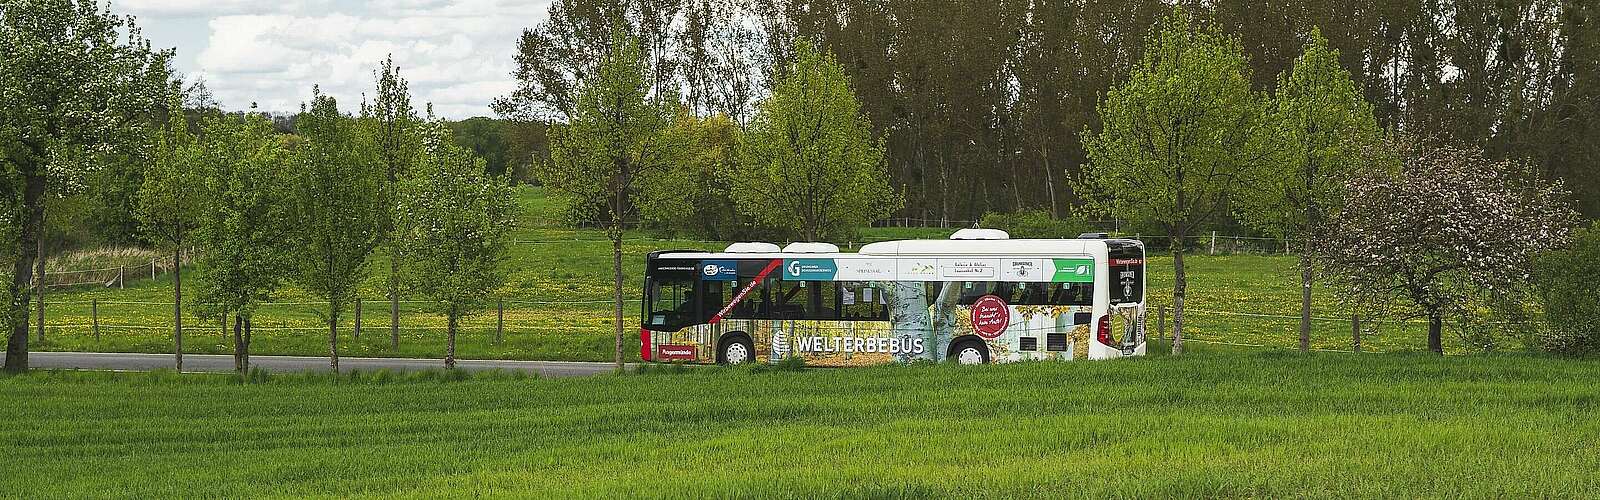 Mit dem Welterbebus in den Grumsin,
        
    

        Foto: Fotograf / Lizenz - Media Import/Steffen Lehmann